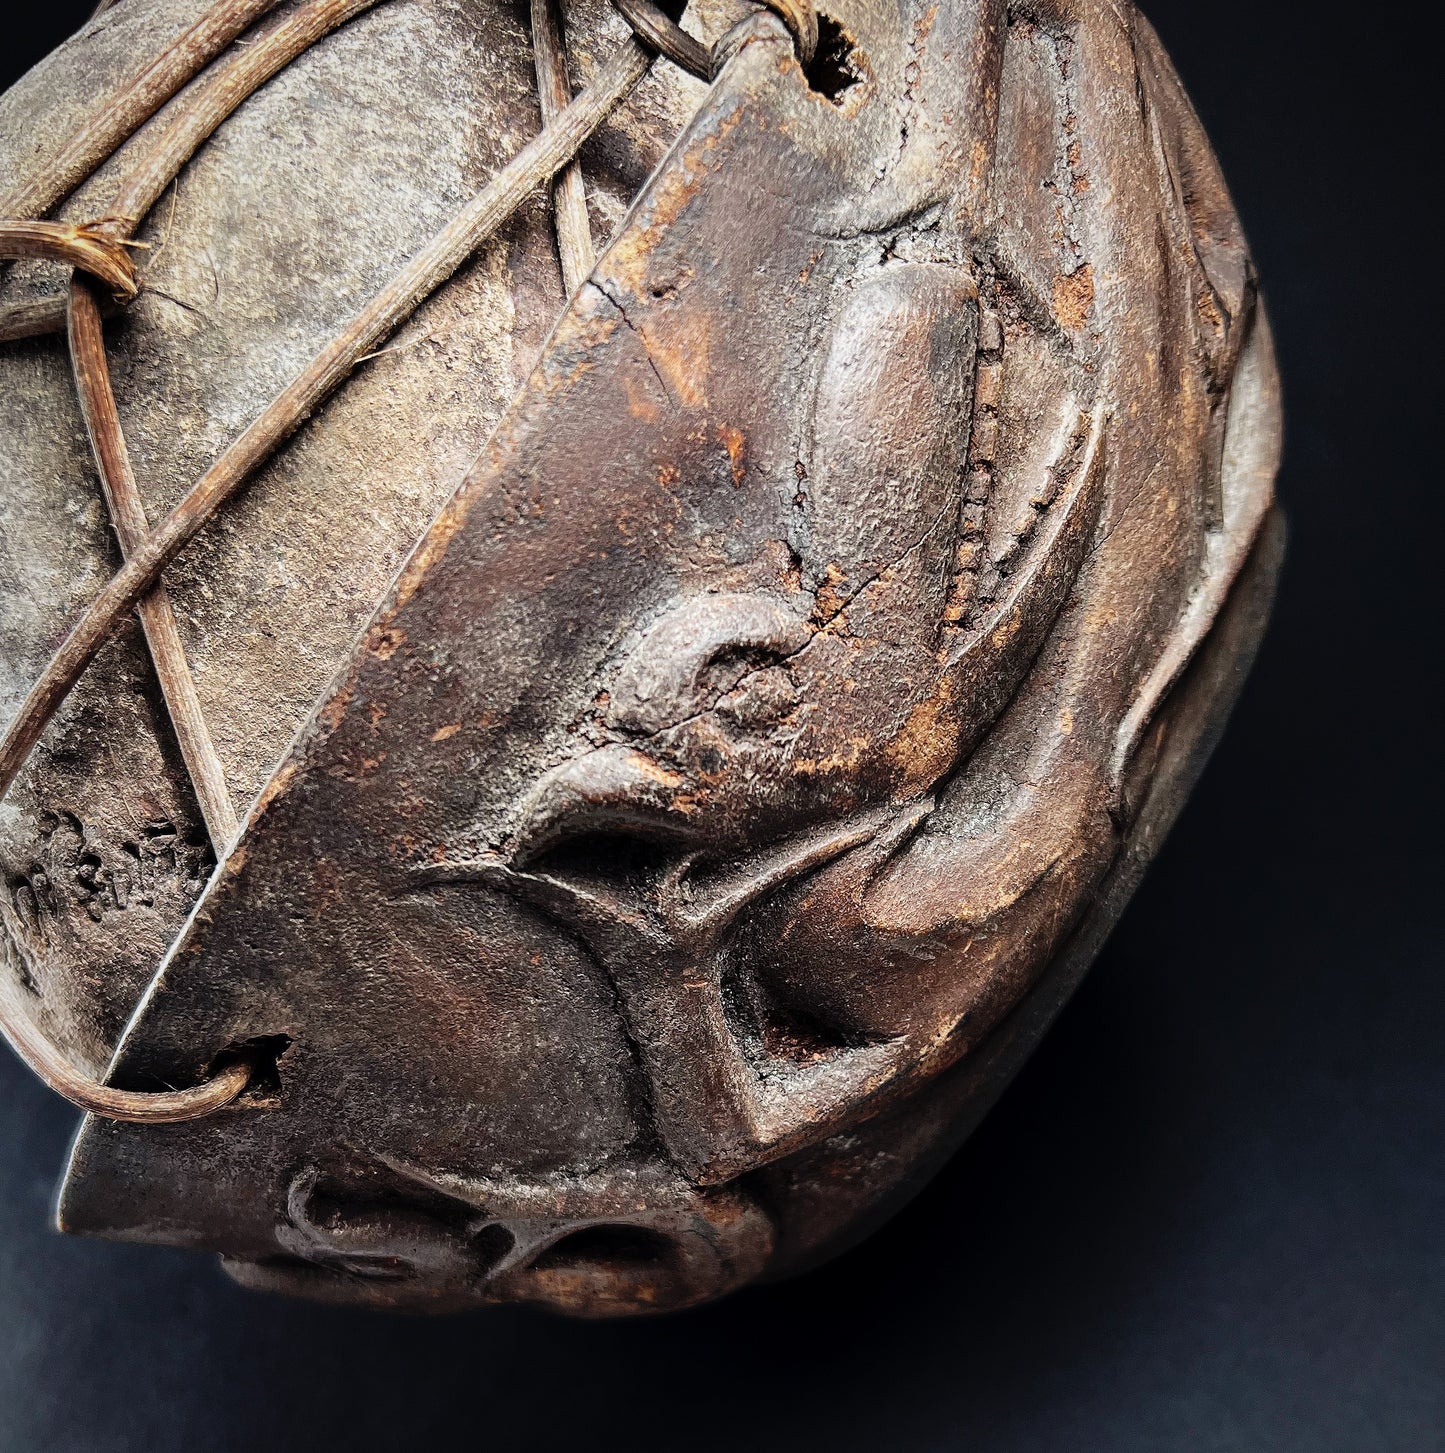 Iban Dayak Bamboo-Bound Trophy Human Skull Bowl